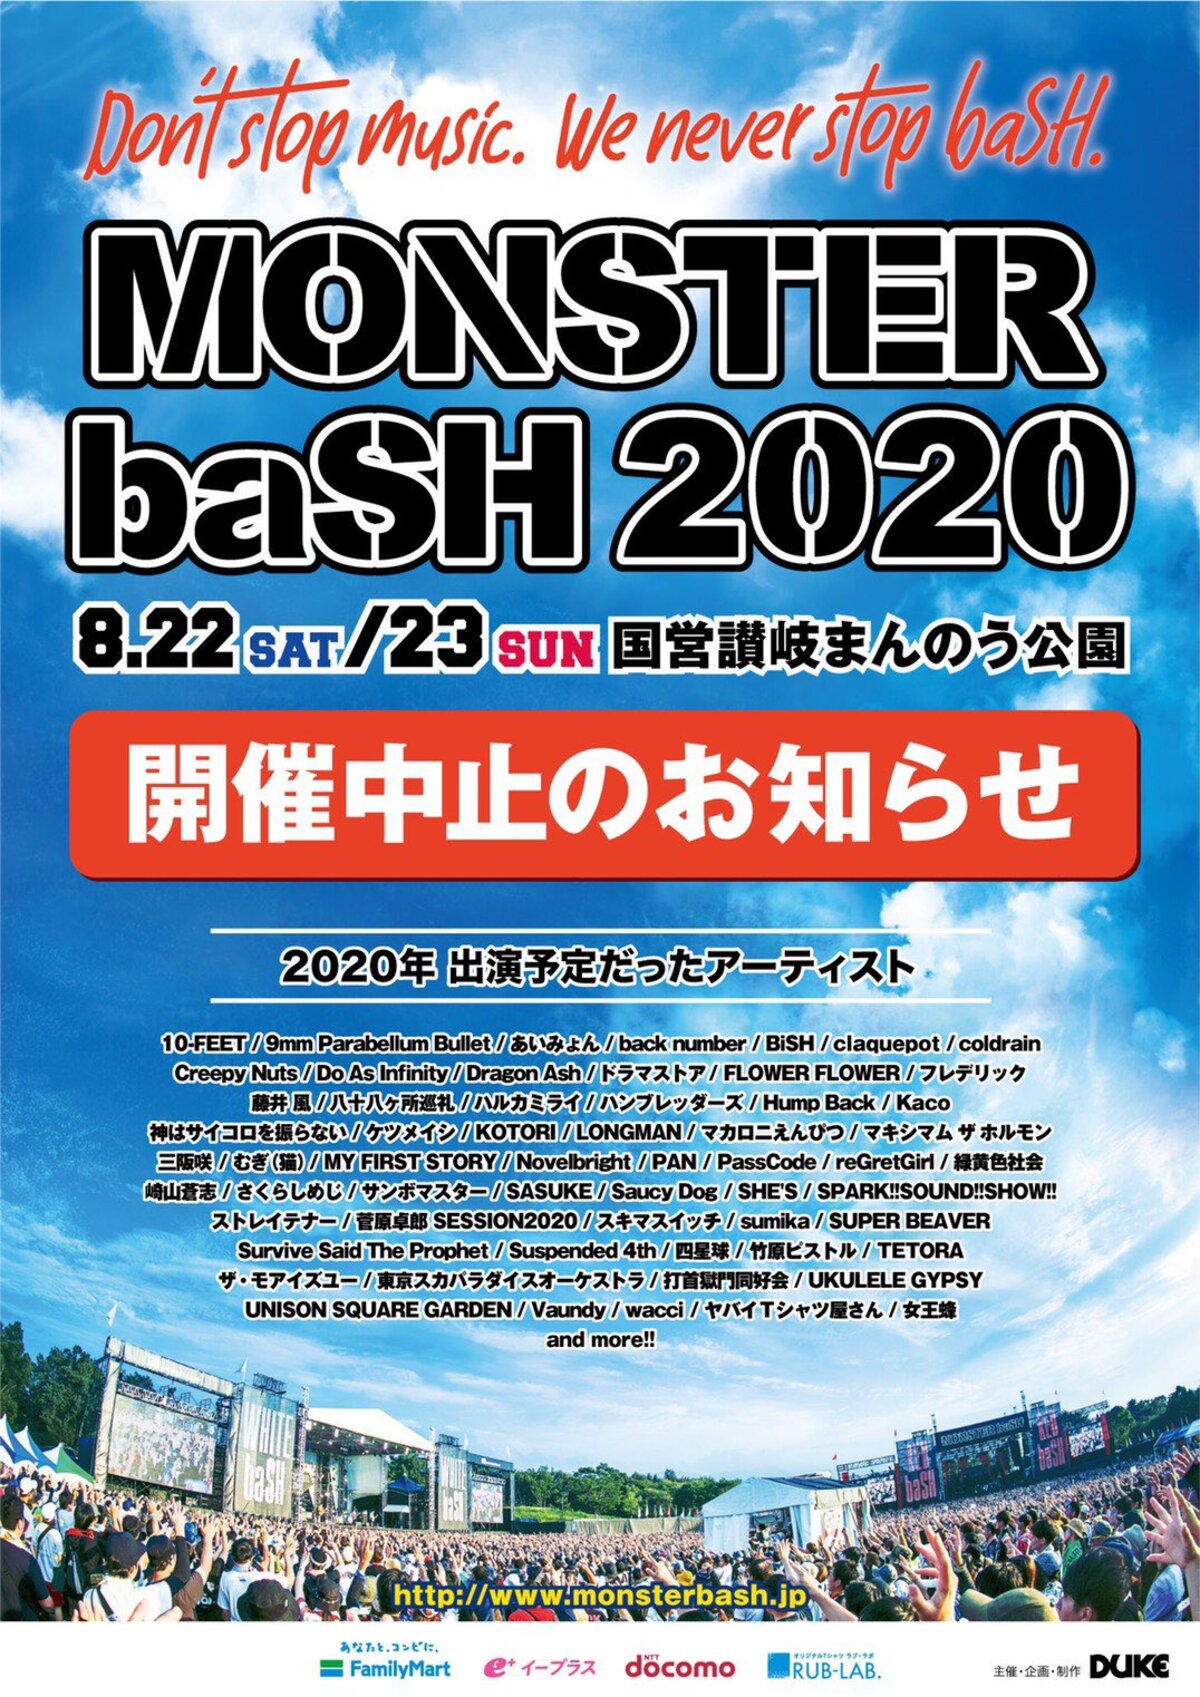 Monster Bash 開催中止 出演予定だったアーティストを発表 激ロック ニュース